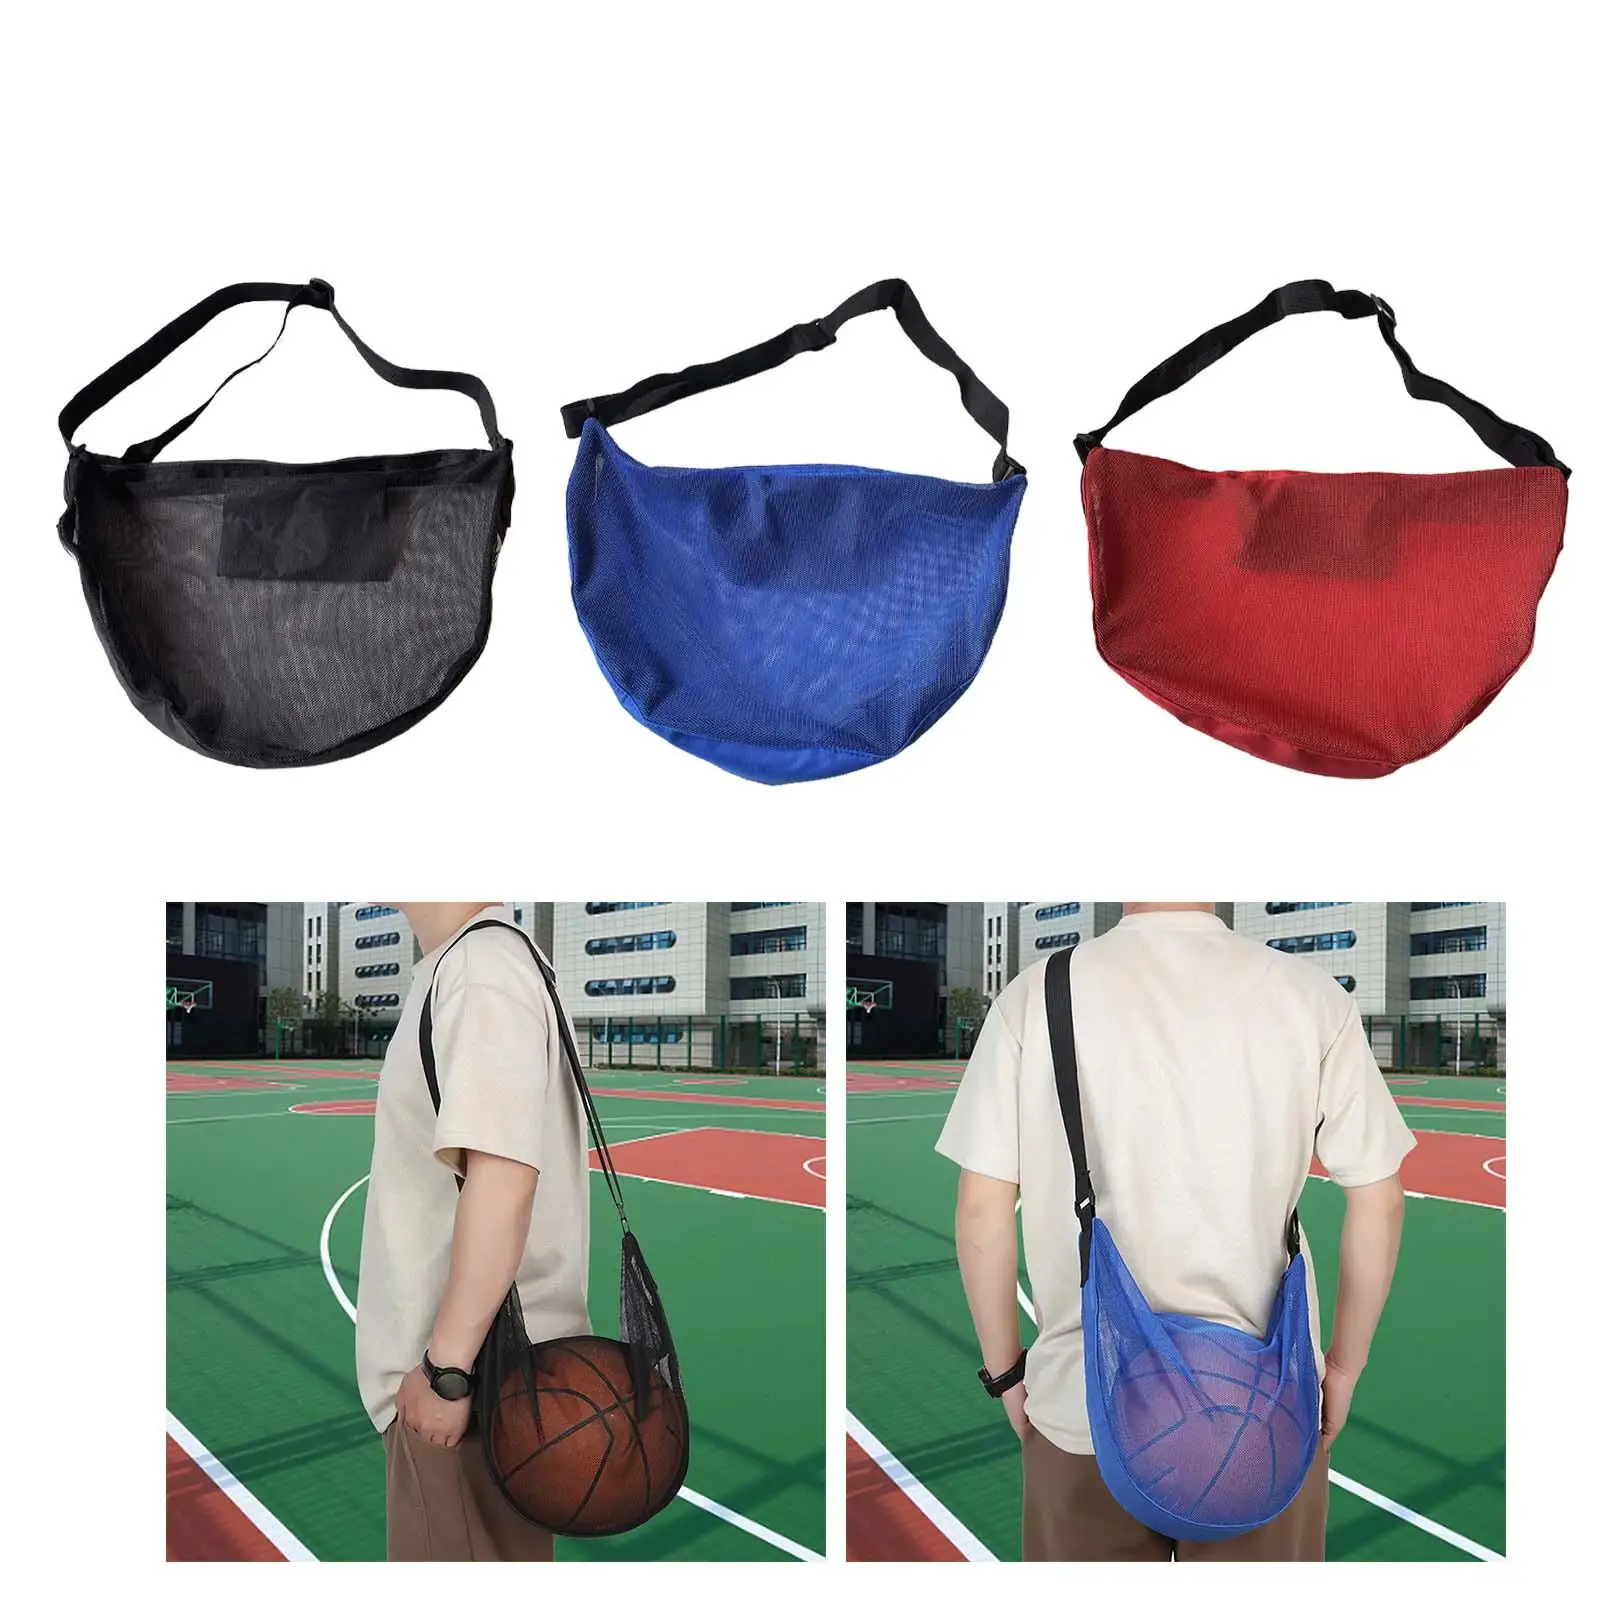 Basketball Carry Bag Storage Lightweight Ball Holder Organizer Ball Bags Mesh for Women Men Training Garage Volleyball Soccer